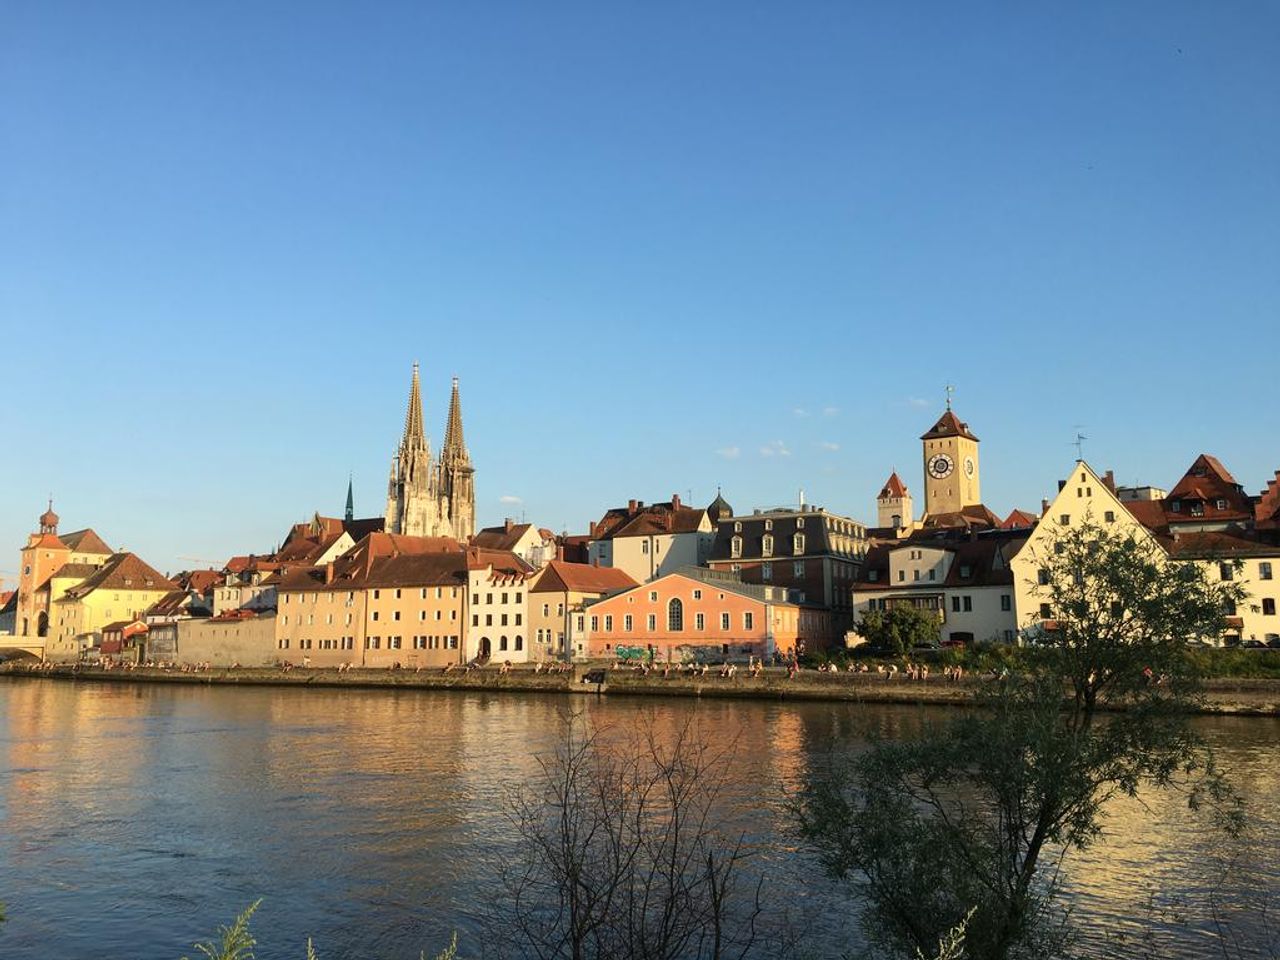 Radeln im wunderschönen Regensburg (2 ÜN)